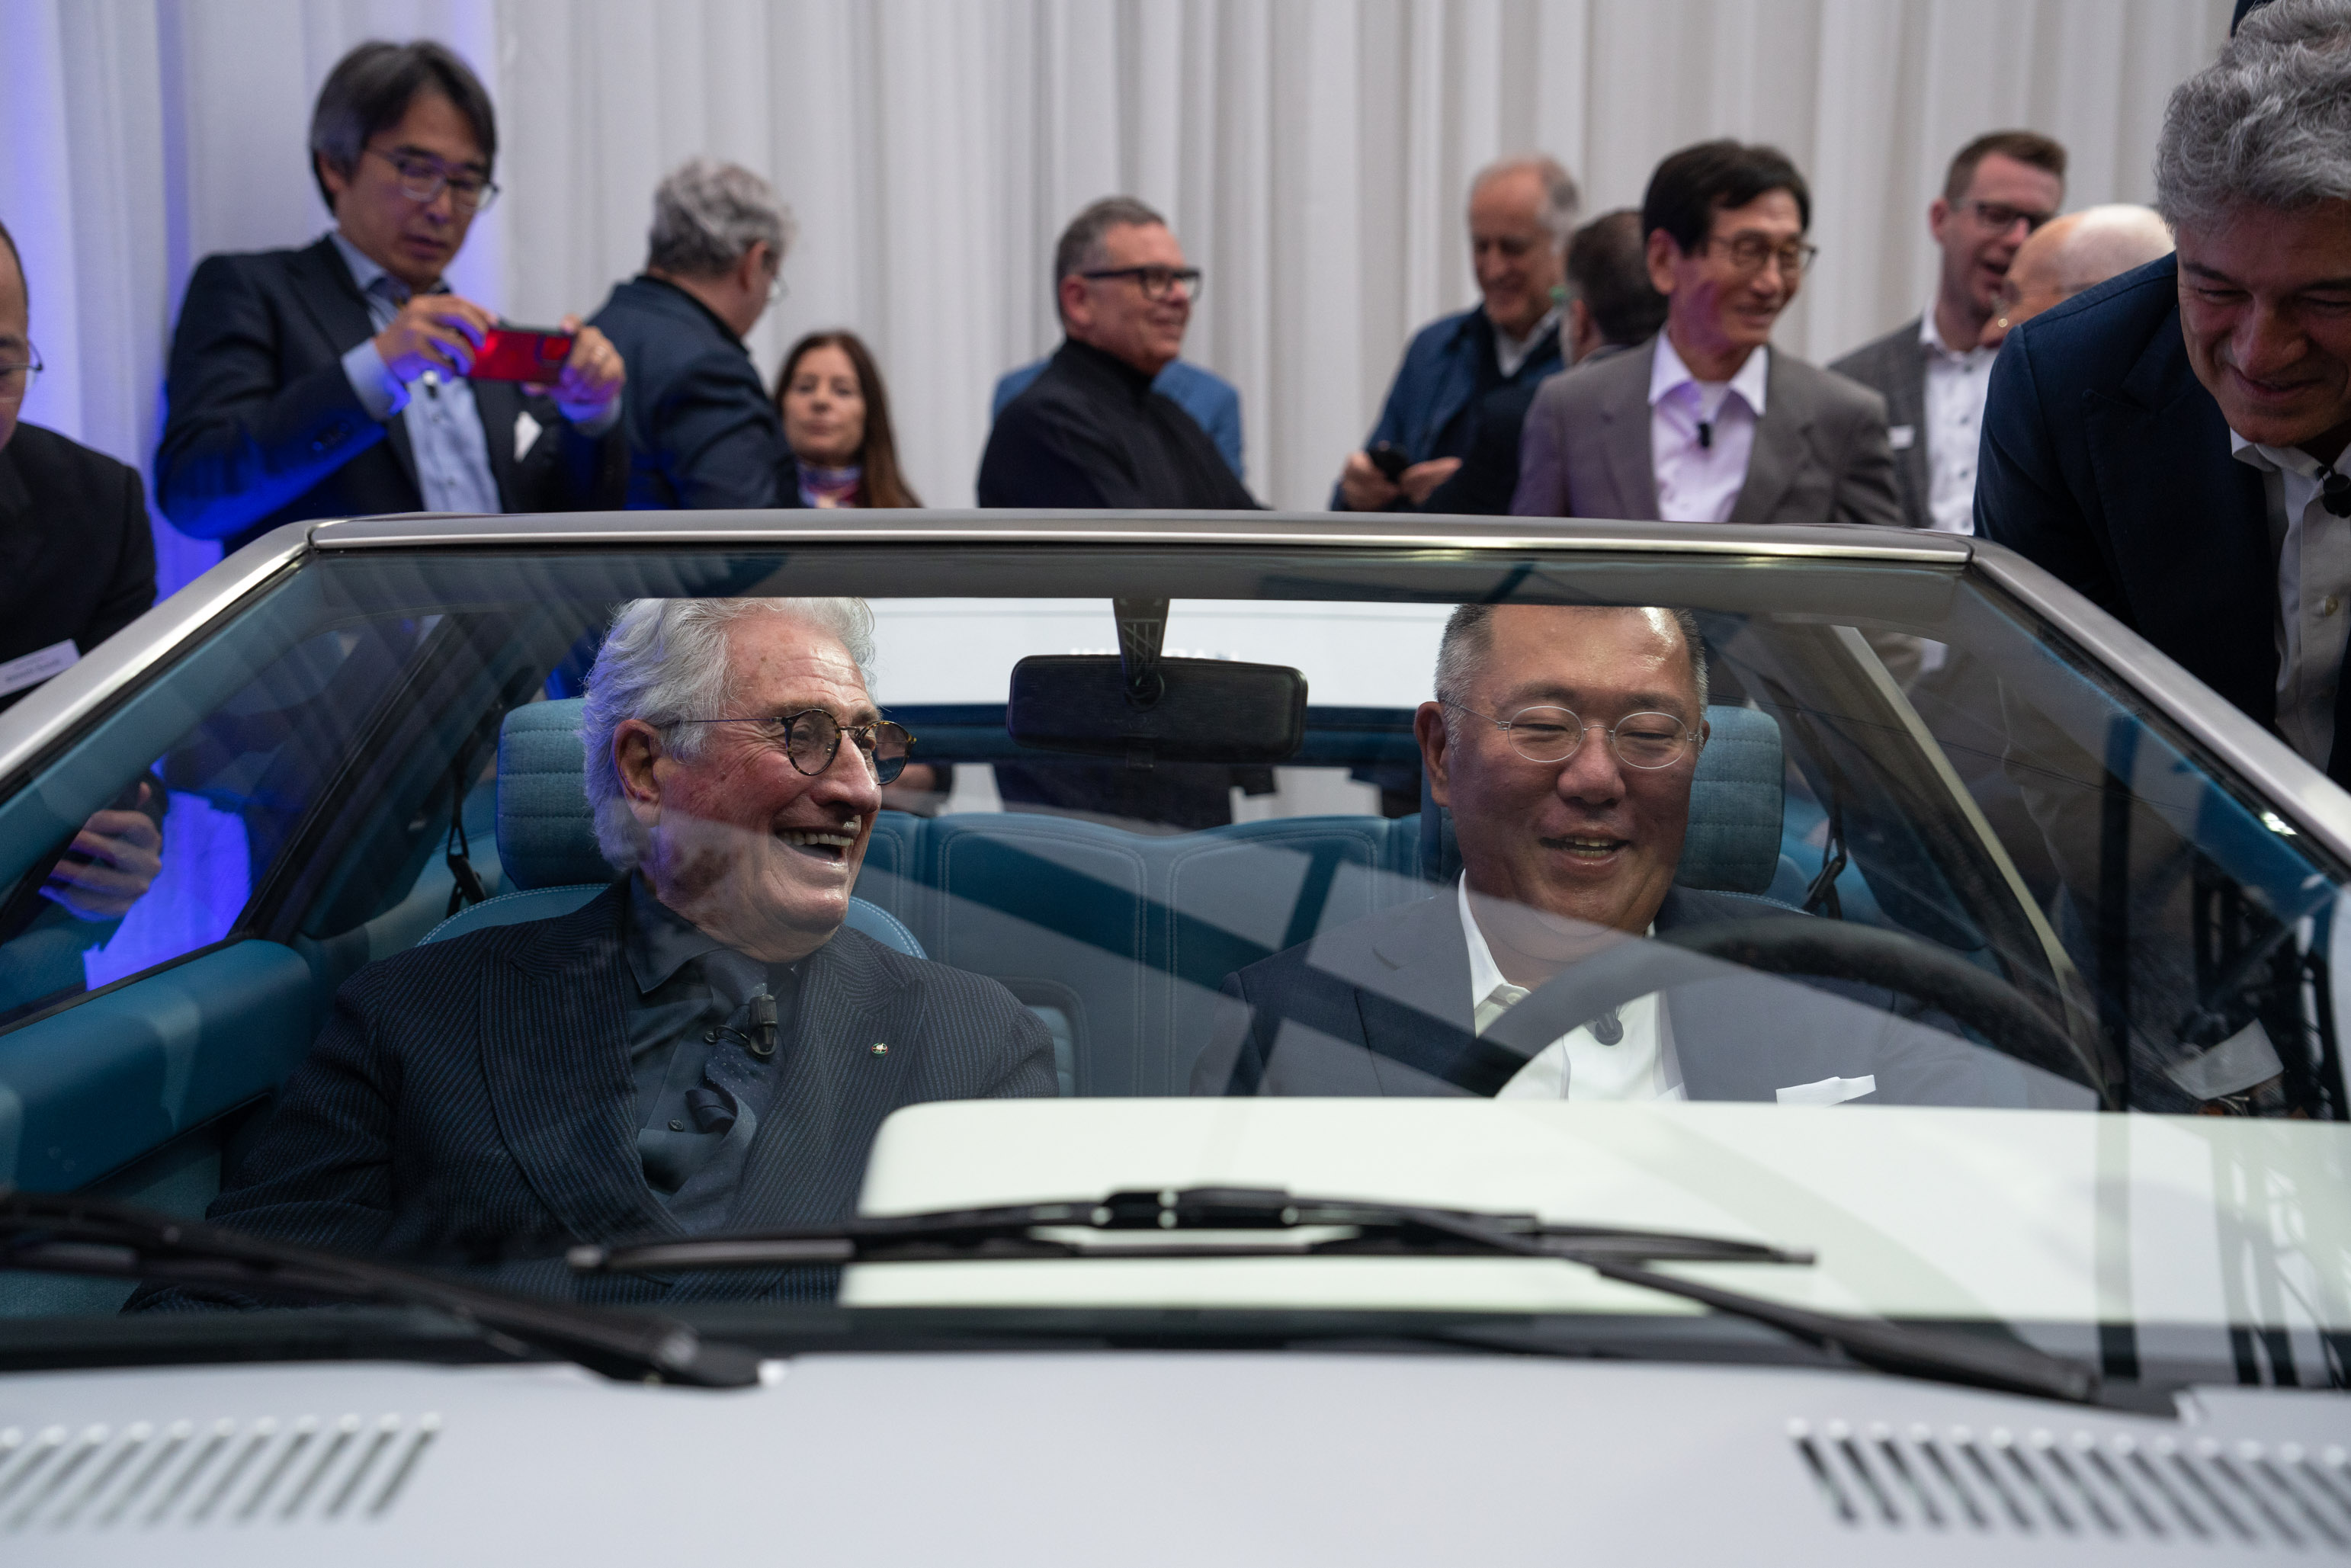 18일(현지시간) 이탈리아 레이크 코모에서 열린 ‘현대 리유니온(Hyundai Reunion)’ 행사에서 정의선(오른쪽) 현대차동차그룹 회장이 디자이너 조르제토 주지아로와 ‘포니 쿠페 콘셉트’ 복원 모델 차량에 탑승해 환담하고 있다. 현대차 제공